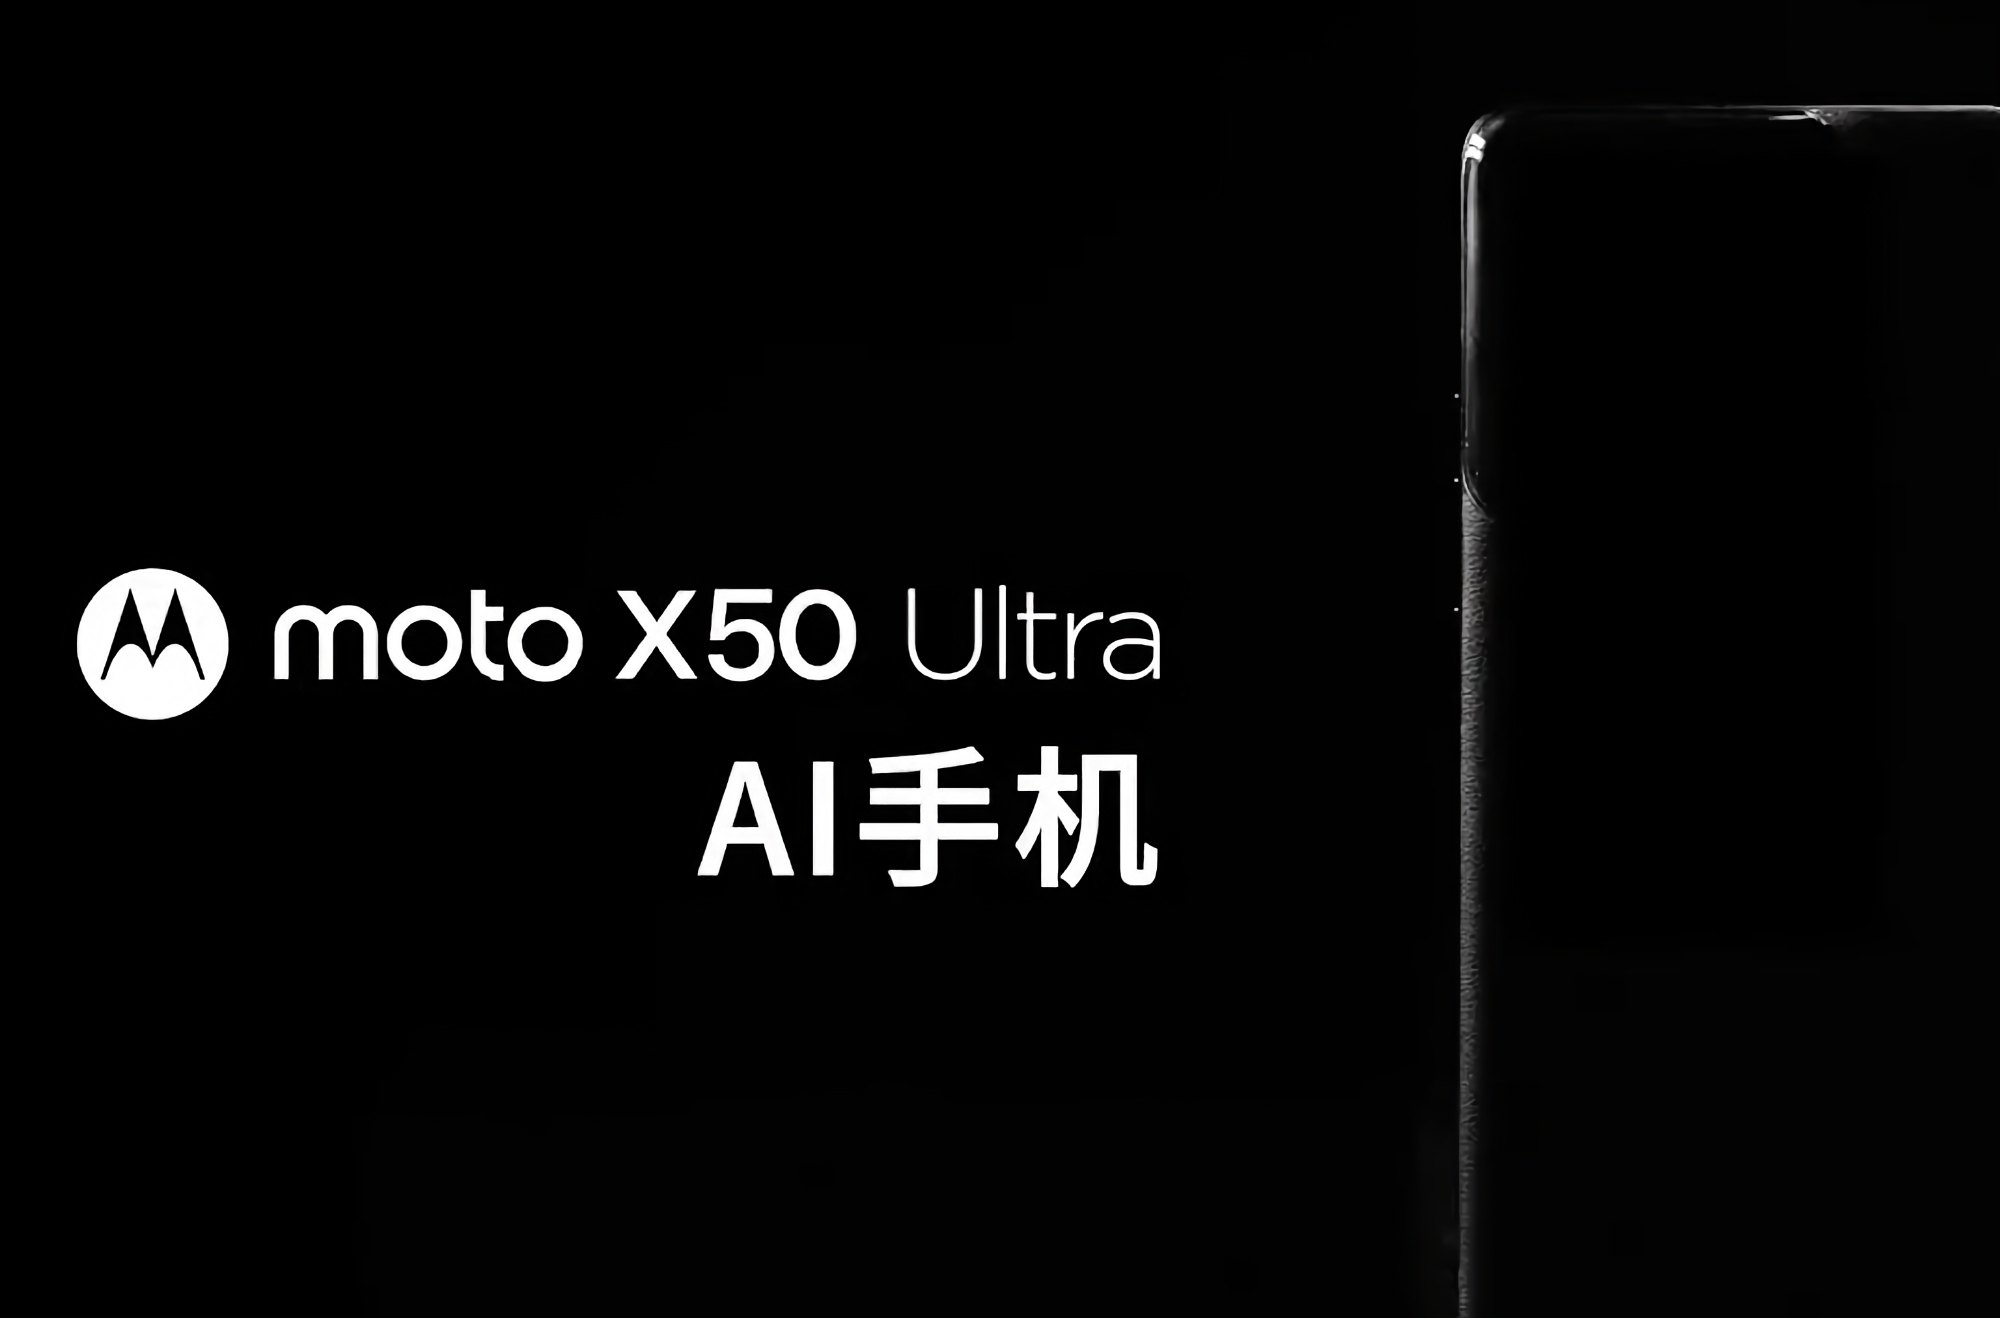 Nå er det offisielt: Motorola forbereder seg på å lansere flaggskipet Moto X50 Ultra med AI-funksjoner.